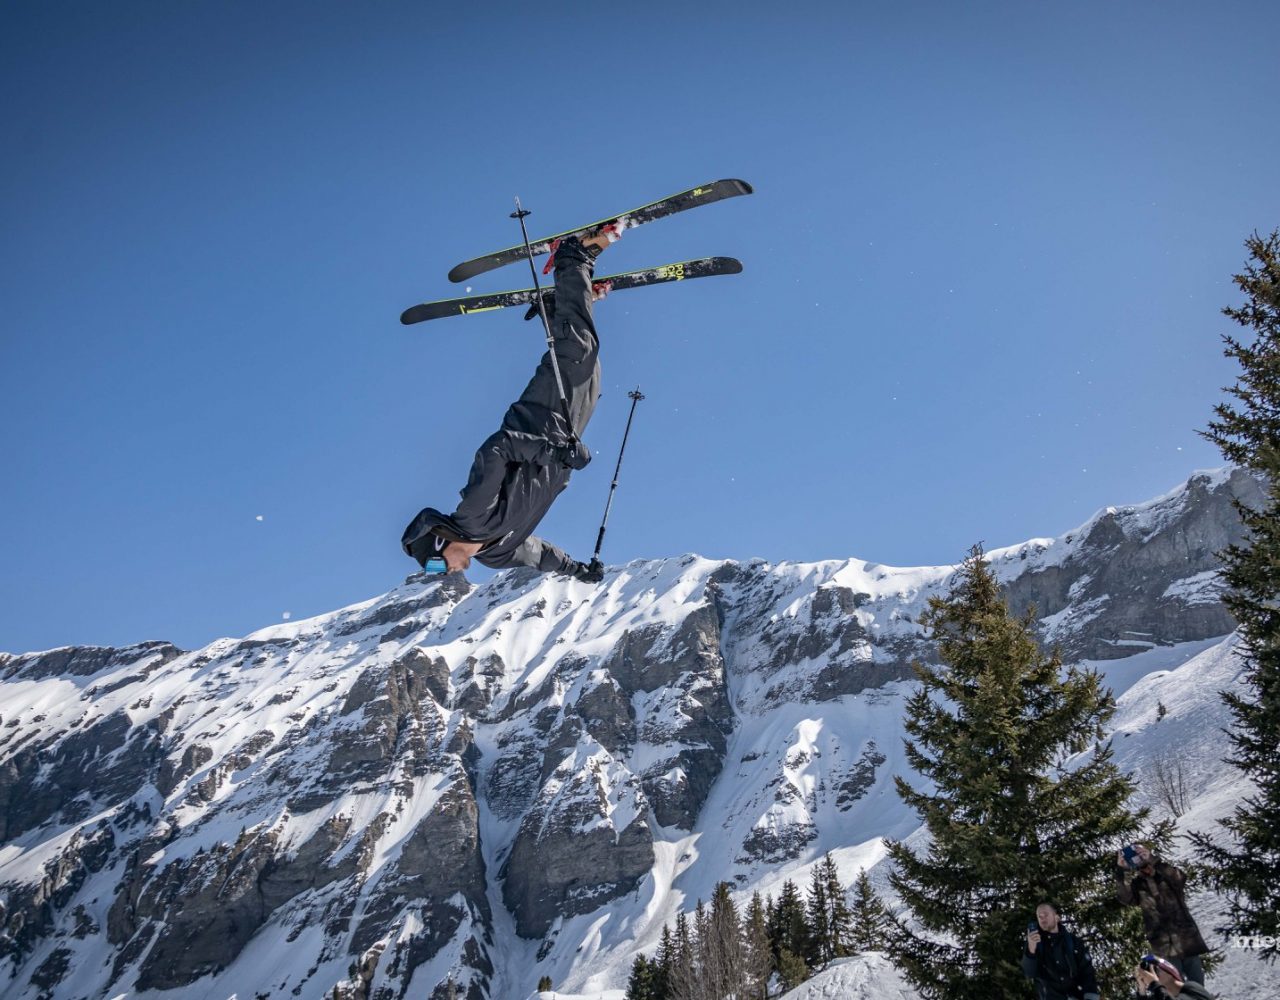 En mars, Megève chausse les skis pour un programme olympique